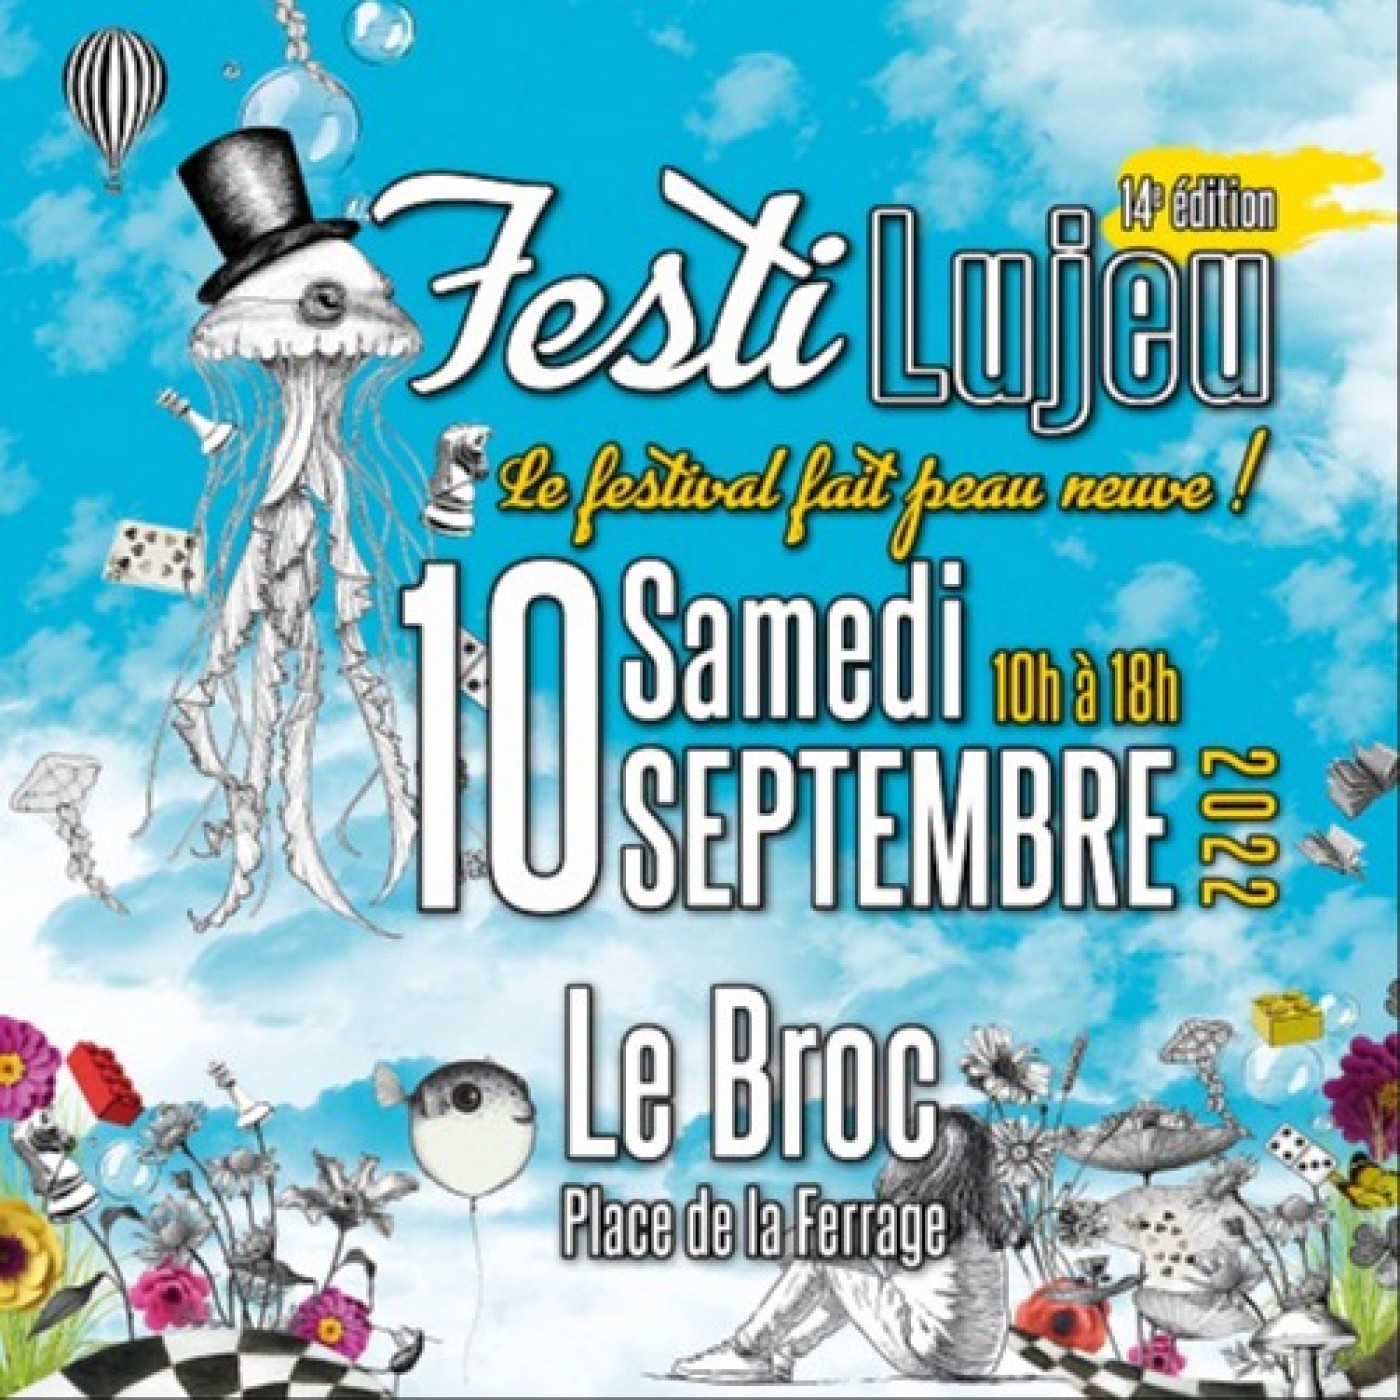 Festilujeu : Festival du Jeu au Broc